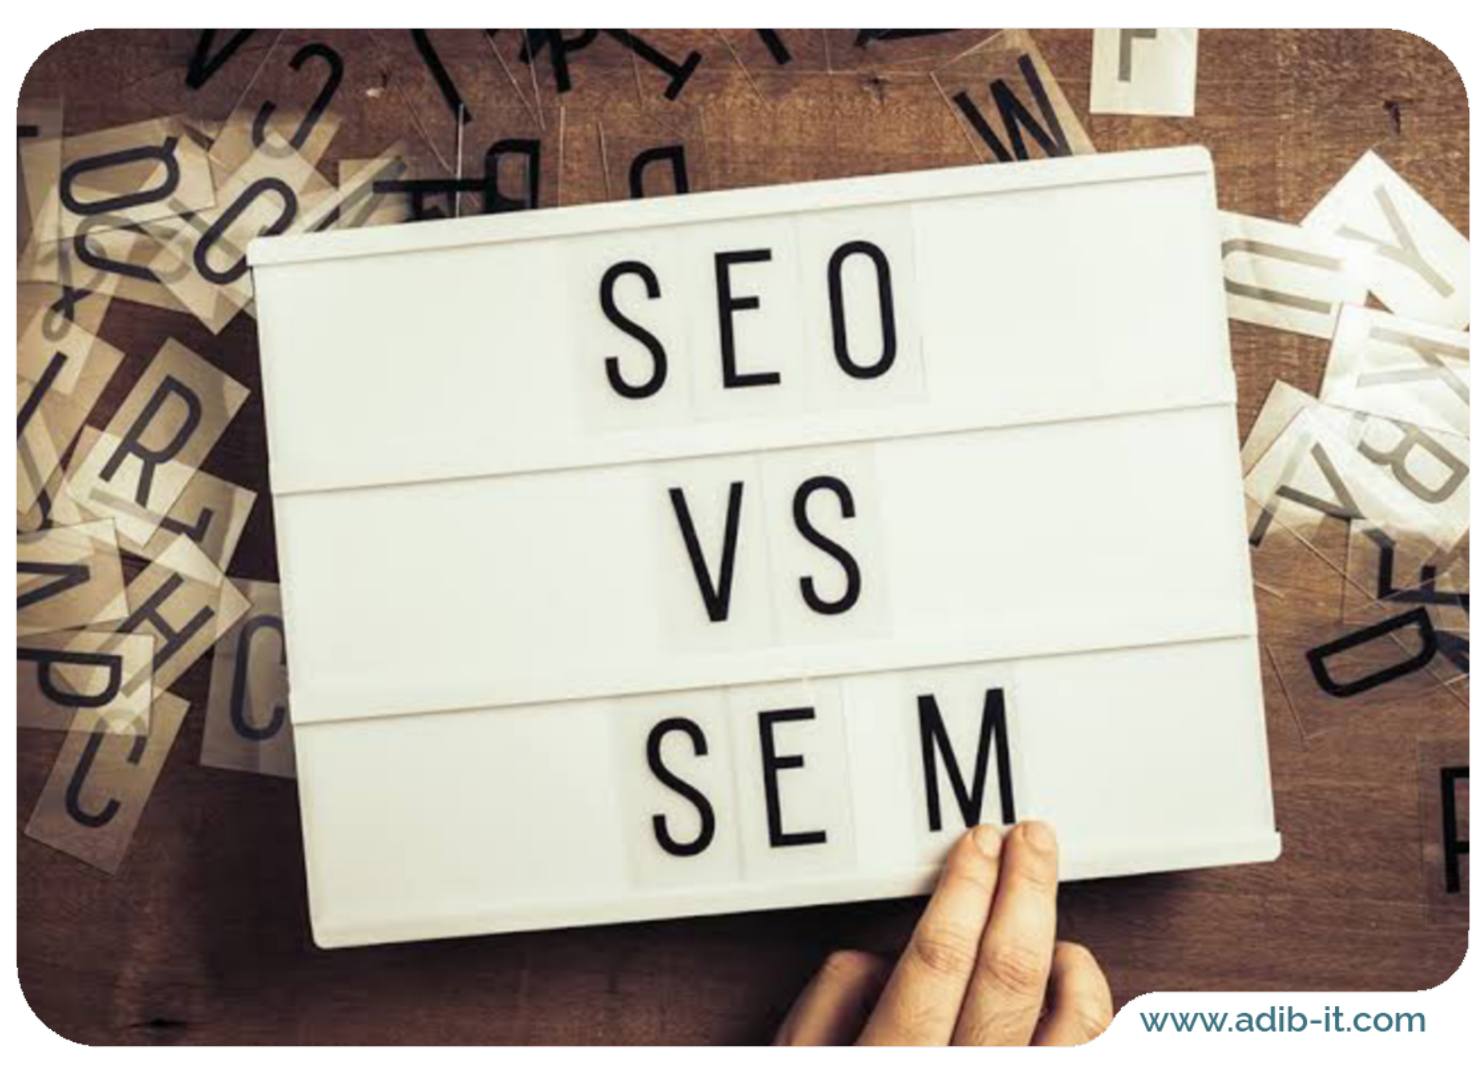 بررسی تفاوت بین seo و sem